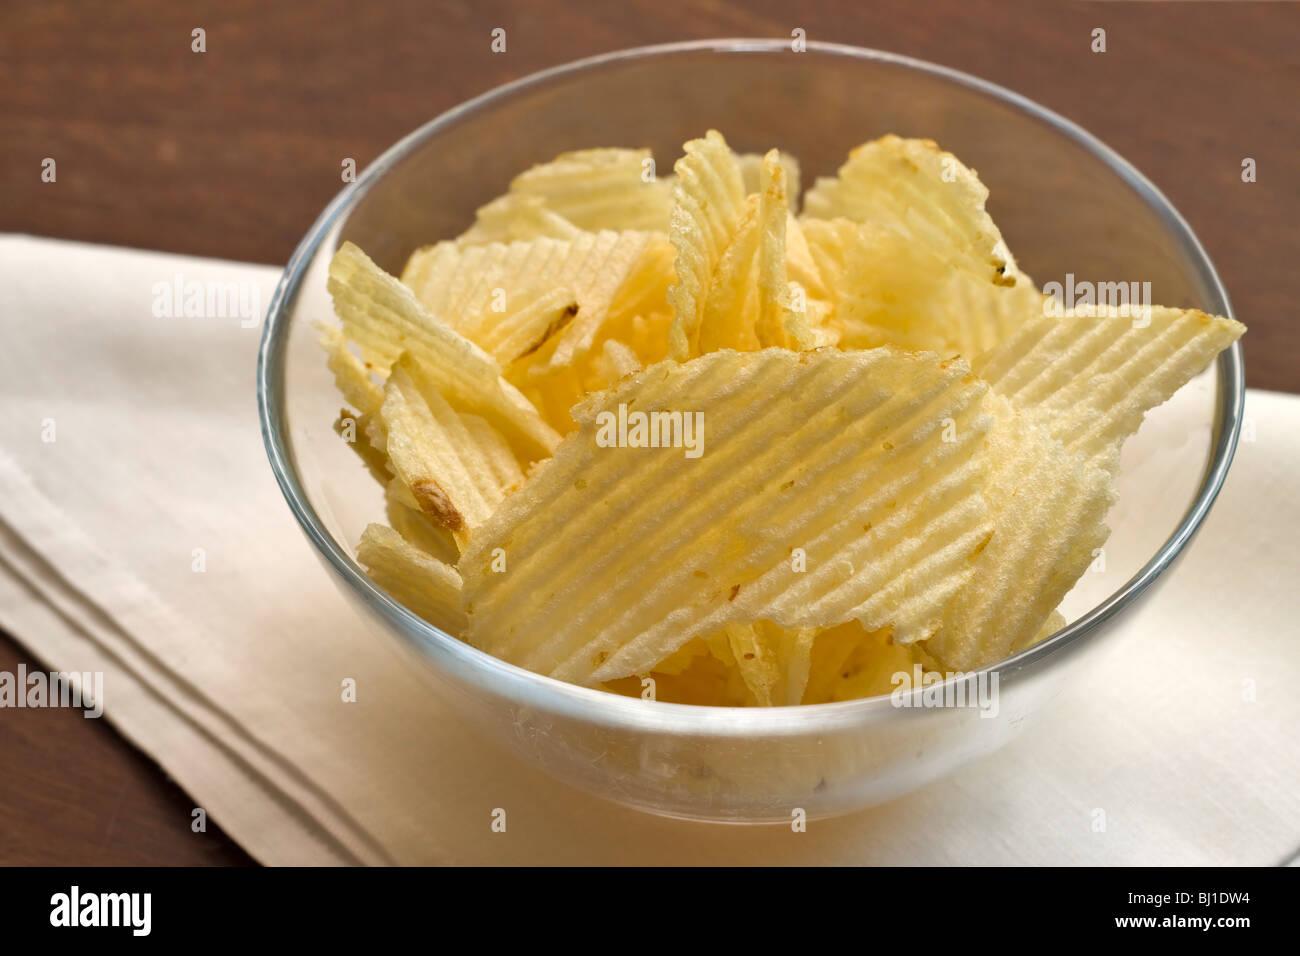 A bowl of potato crisps Stock Photo